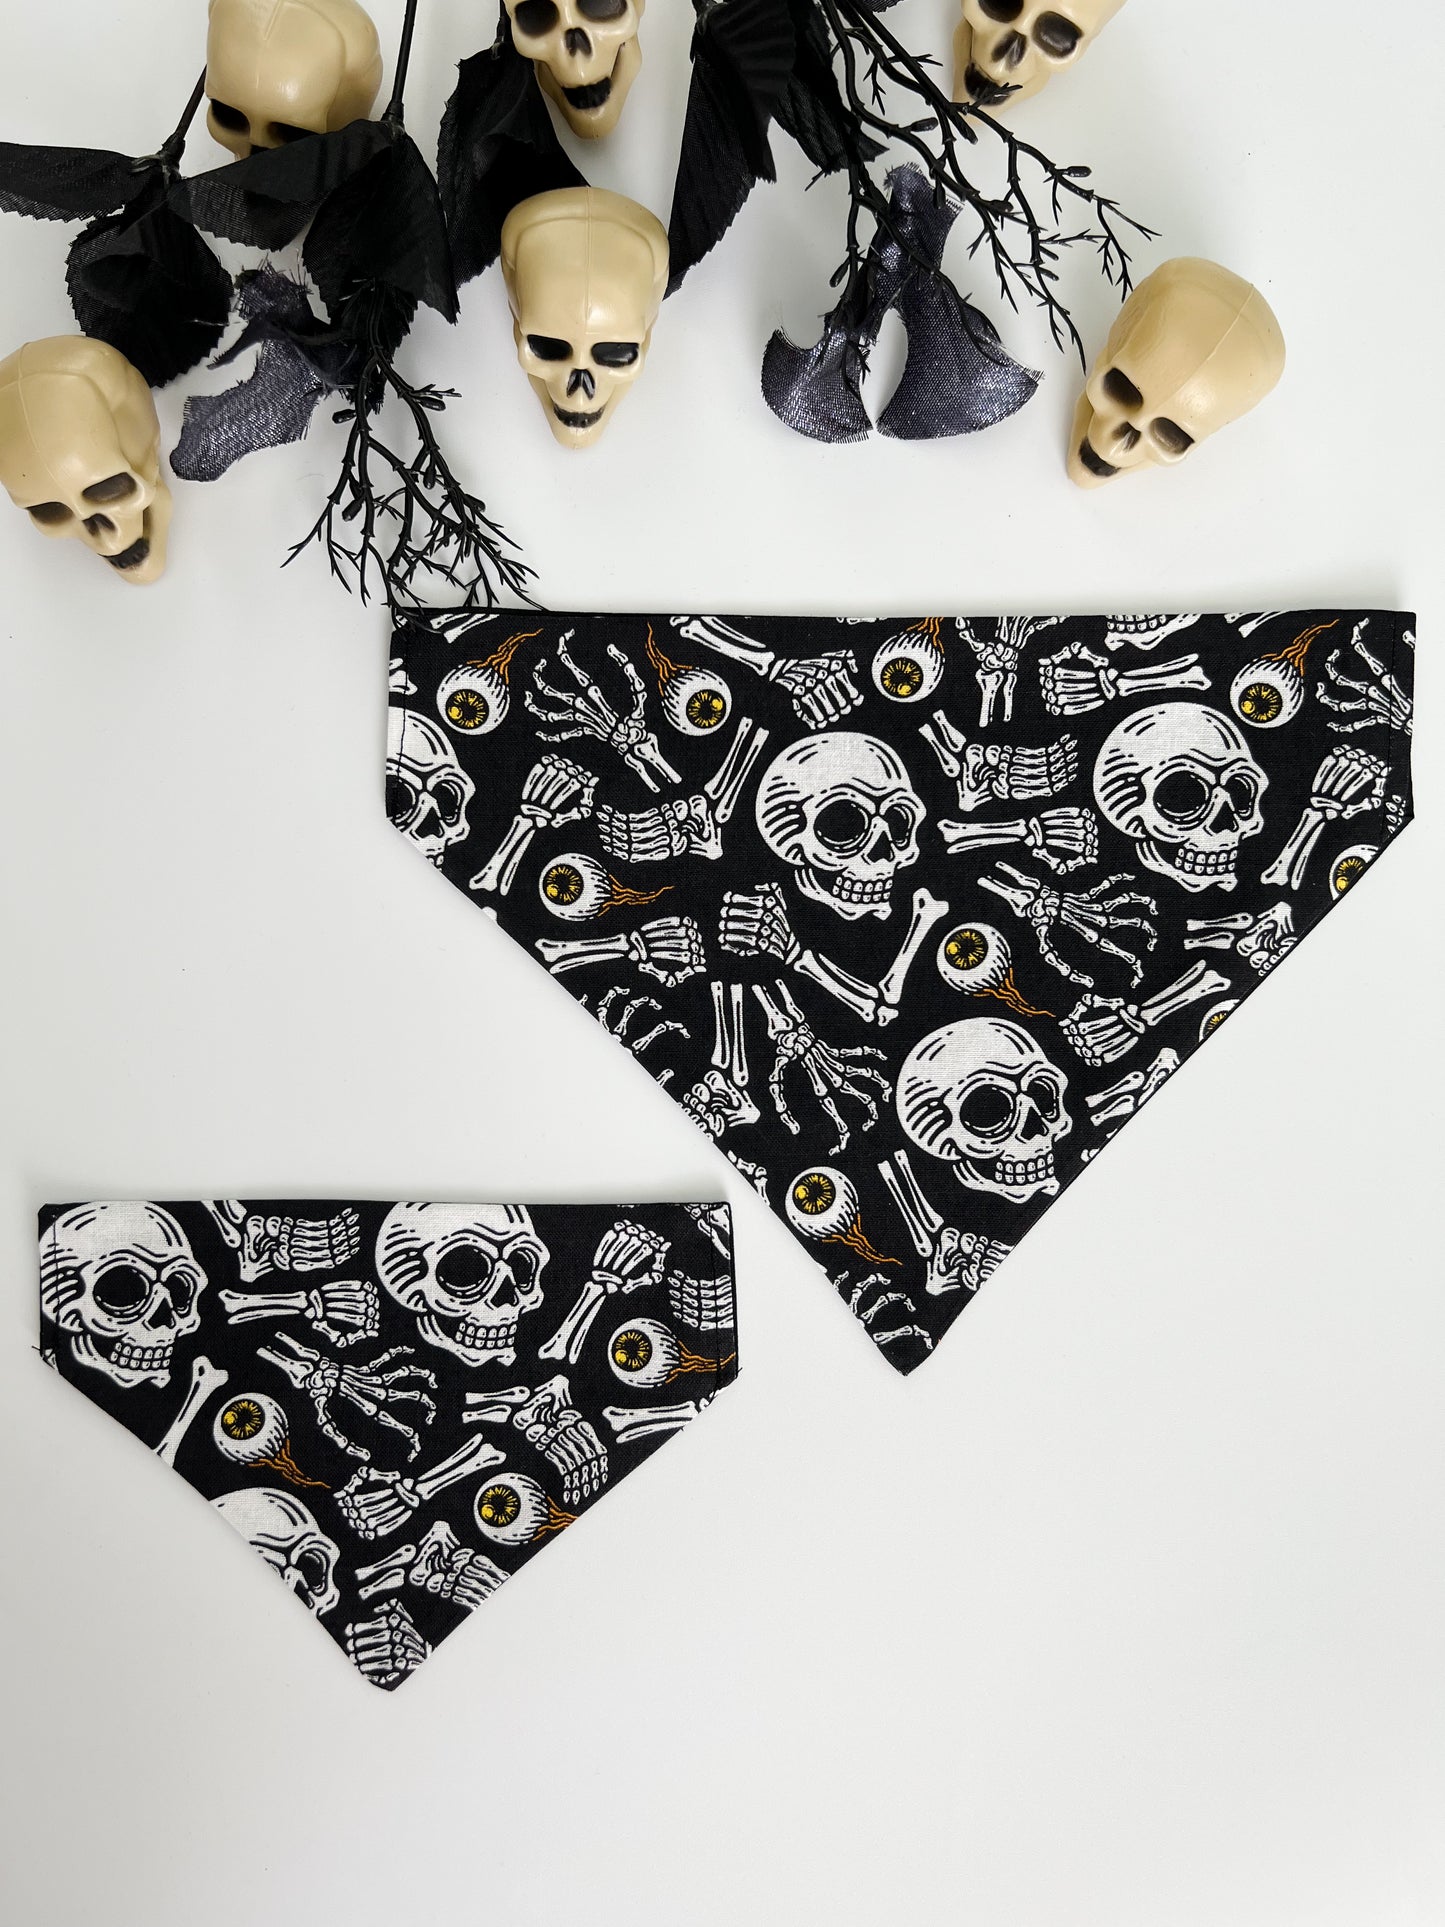 Skulls & Bones- Over The Collar Dog Bandana